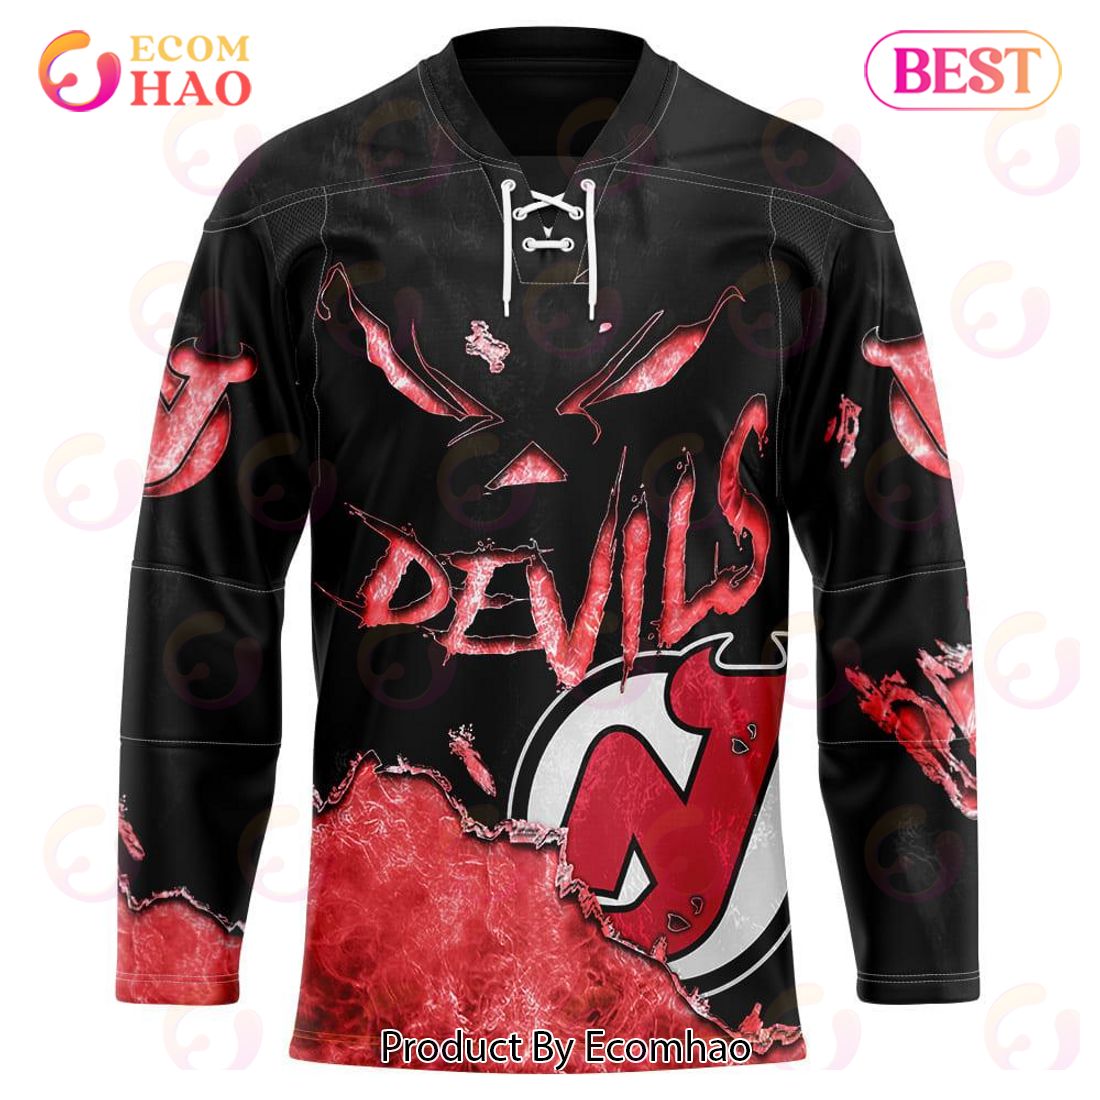 New Jersey Devils Social Media Team Bodybags A Fan, He Deletes Profile –  OutKick